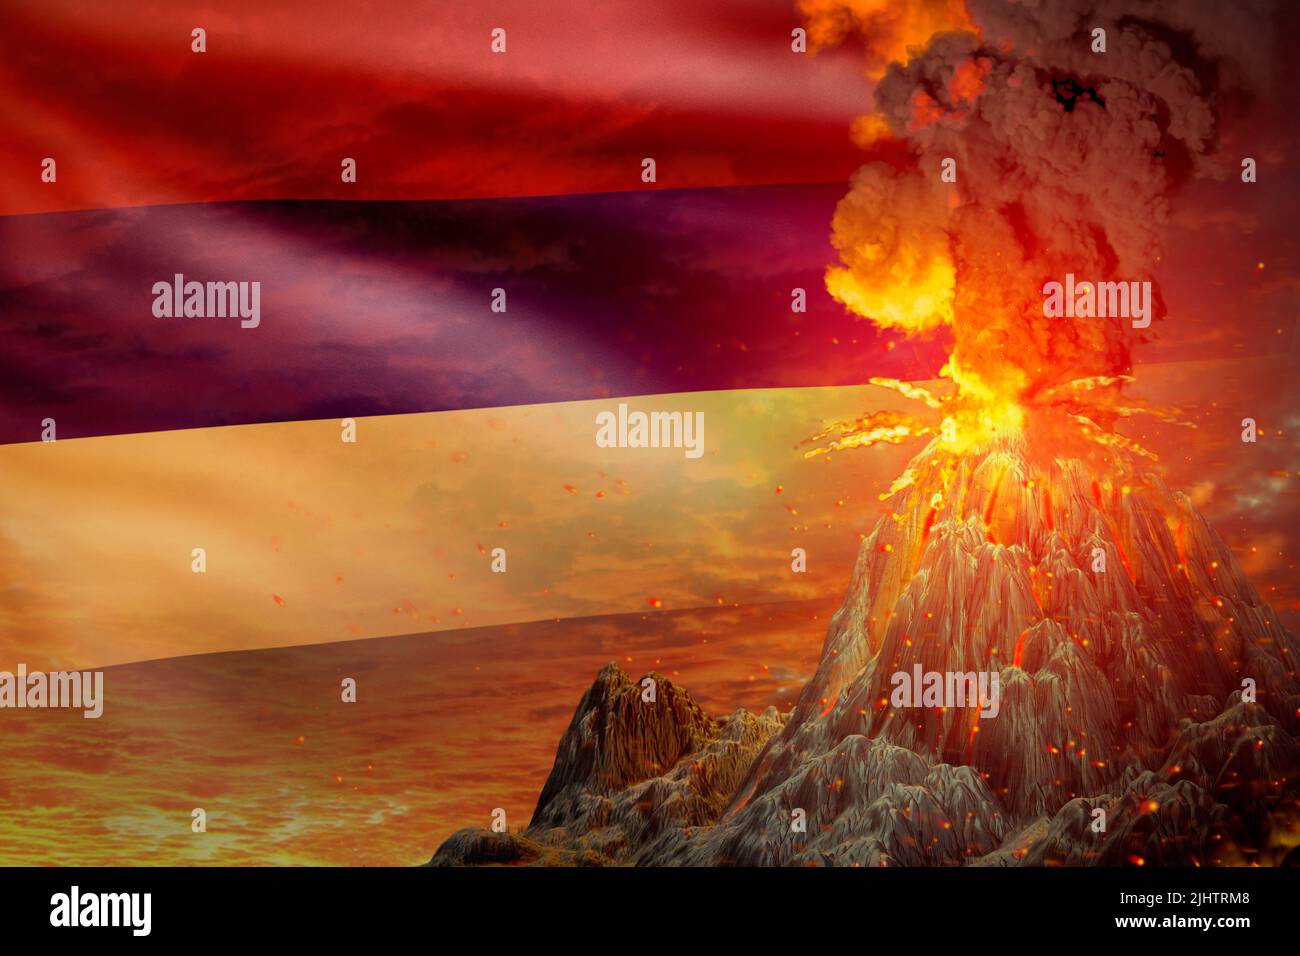 an impressive dangerous volcano exploding scene anime manga art Stock  Illustration  Adobe Stock